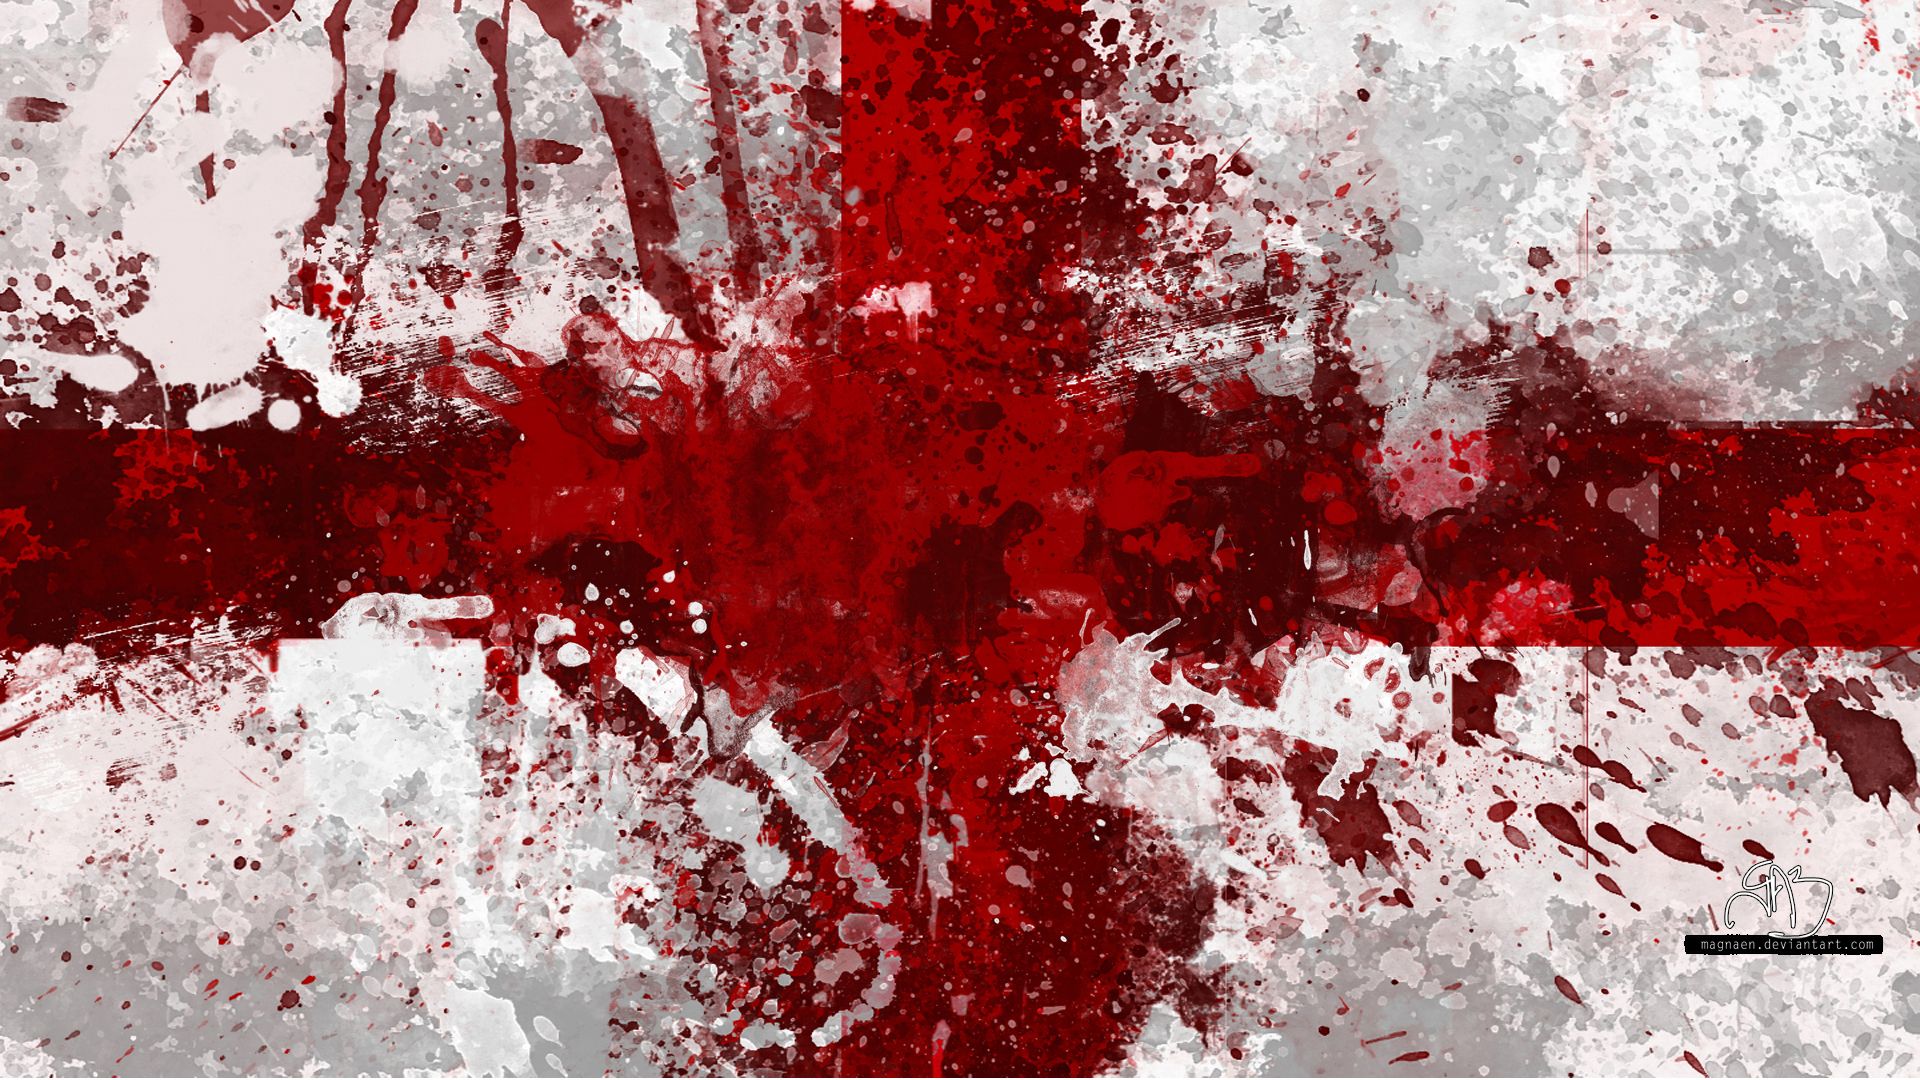 100% HDQ Blood Wallpaper. DeskK HDQ Cover Wallpaper